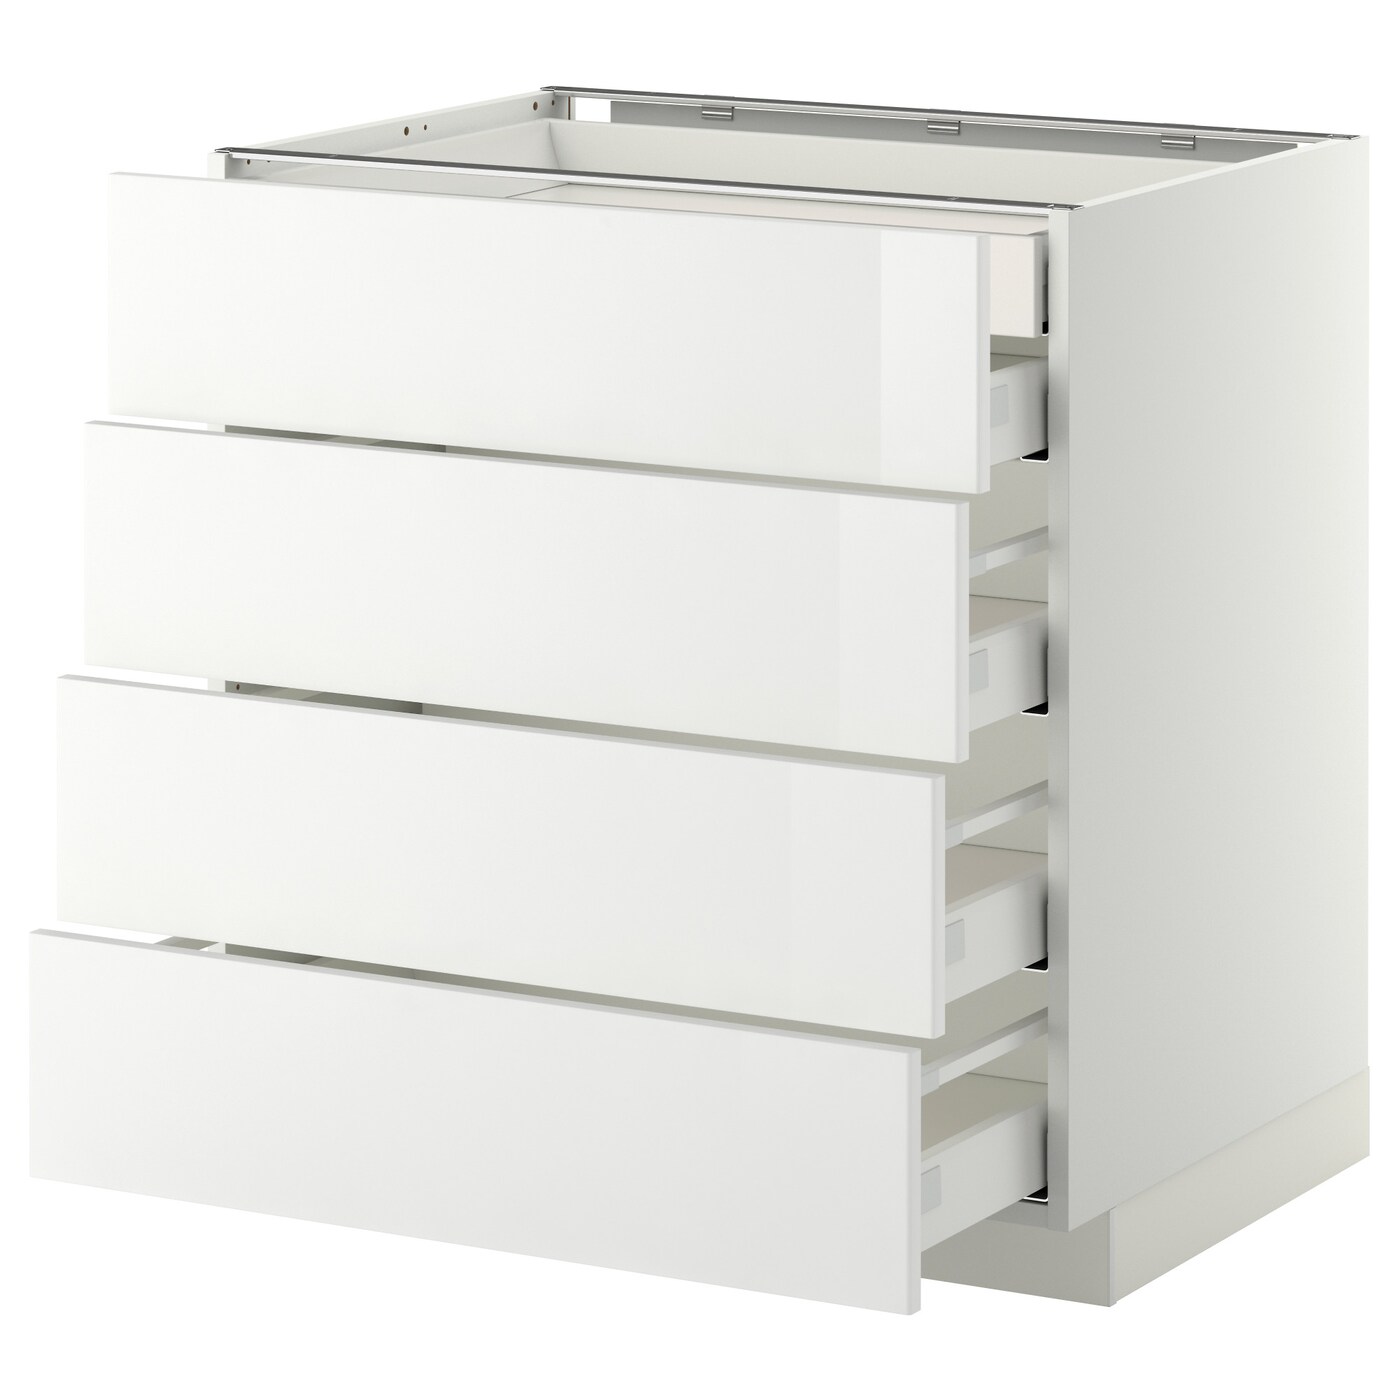 Напольный кухонный шкаф  - IKEA METOD MAXIMERA, 80x61,8x80см, белый, МЕТОД МАКСИМЕРА ИКЕА